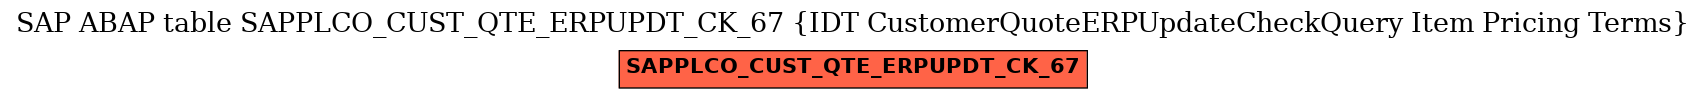 E-R Diagram for table SAPPLCO_CUST_QTE_ERPUPDT_CK_67 (IDT CustomerQuoteERPUpdateCheckQuery Item Pricing Terms)